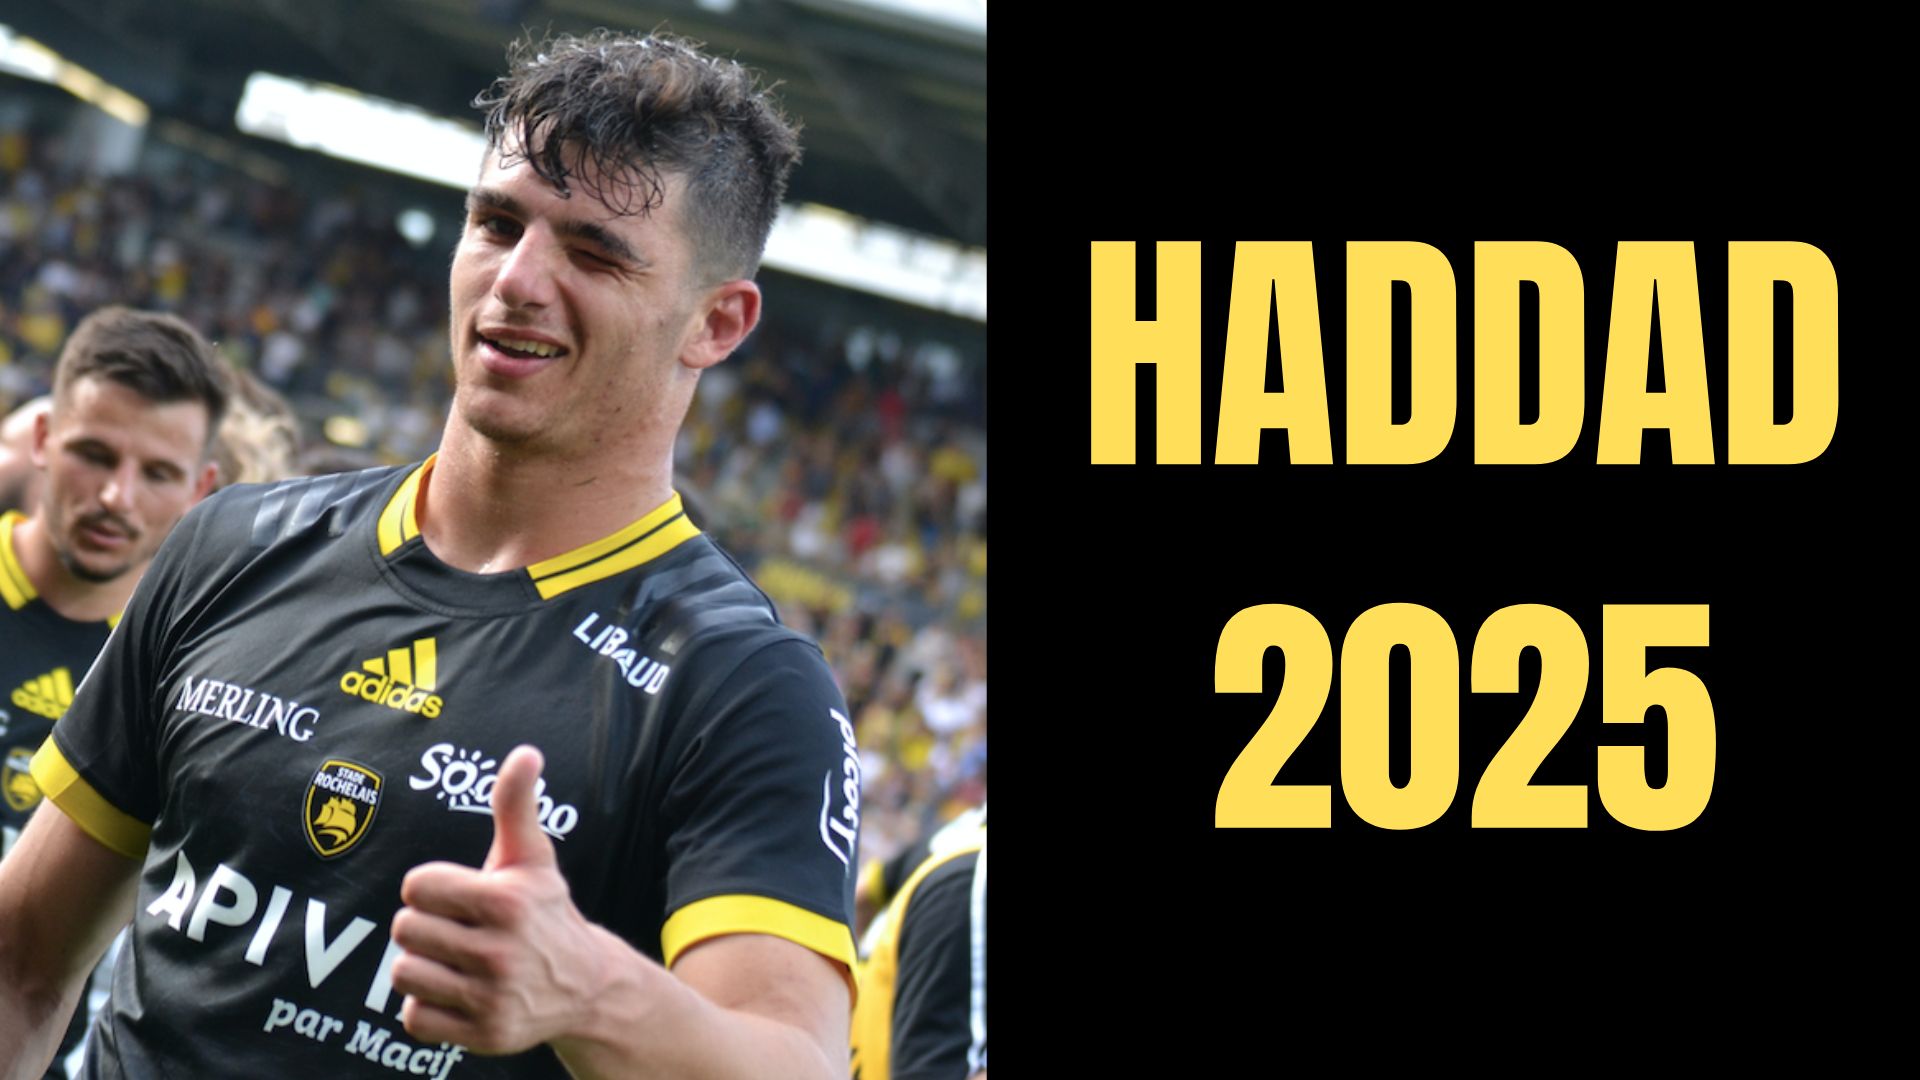 Matthias Haddad prolonge jusqu’en 2025